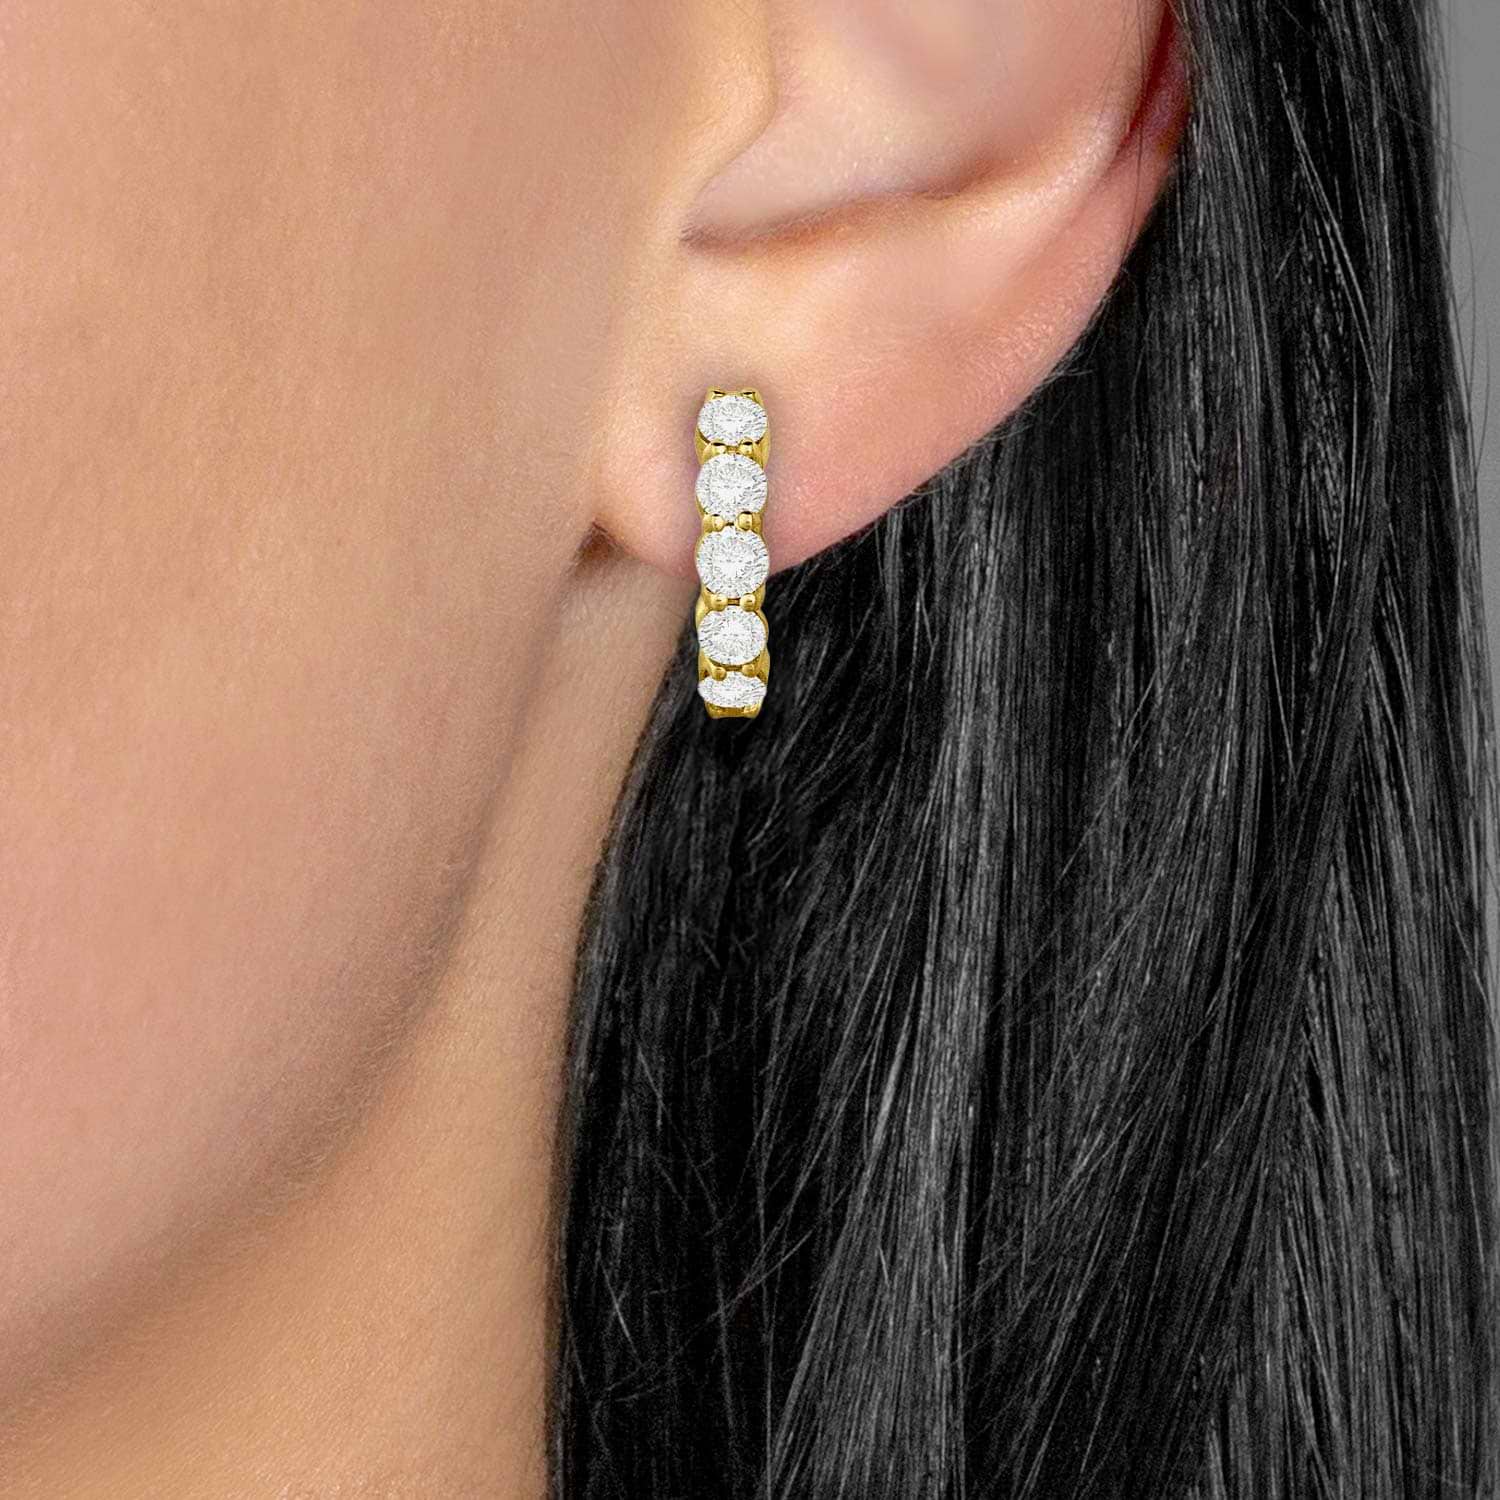 Hinged Hoop Diamond Huggie Style Earrings in 14k Yellow Gold (1.00ct)